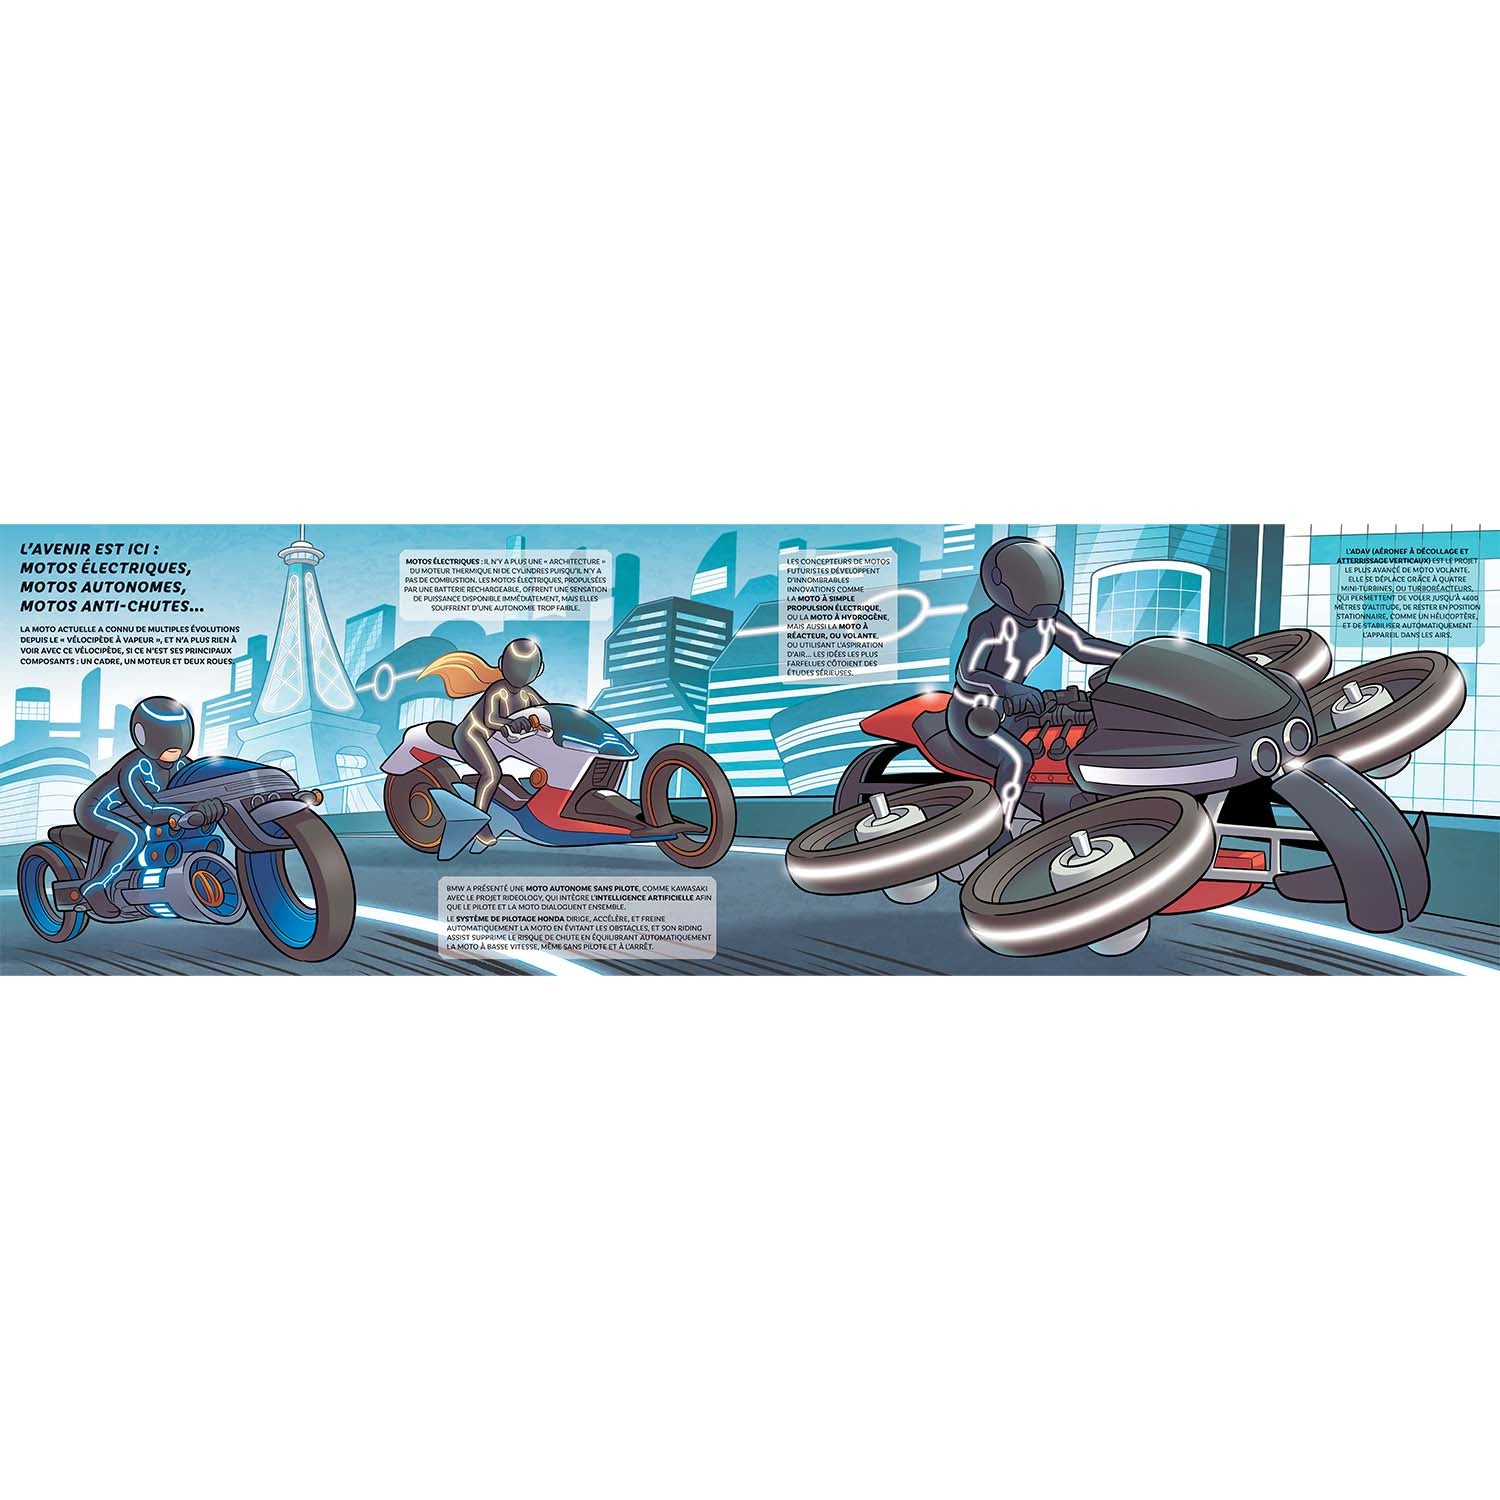 Motos - Des modèles à vapeur à la moto volante